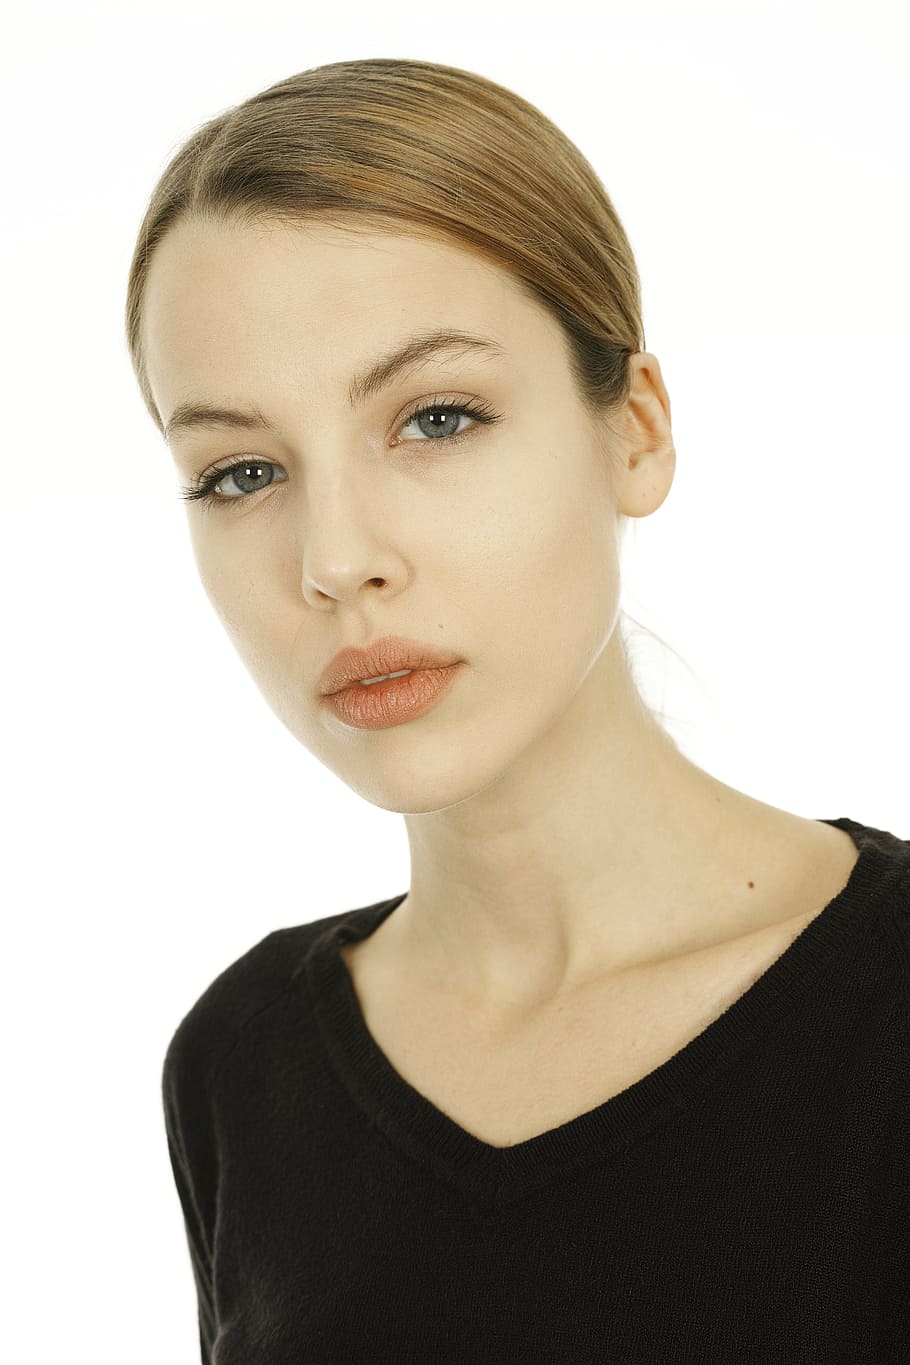 HD Wallpaper: Woman Wearing Black V Neck Top, Beautiful, Young